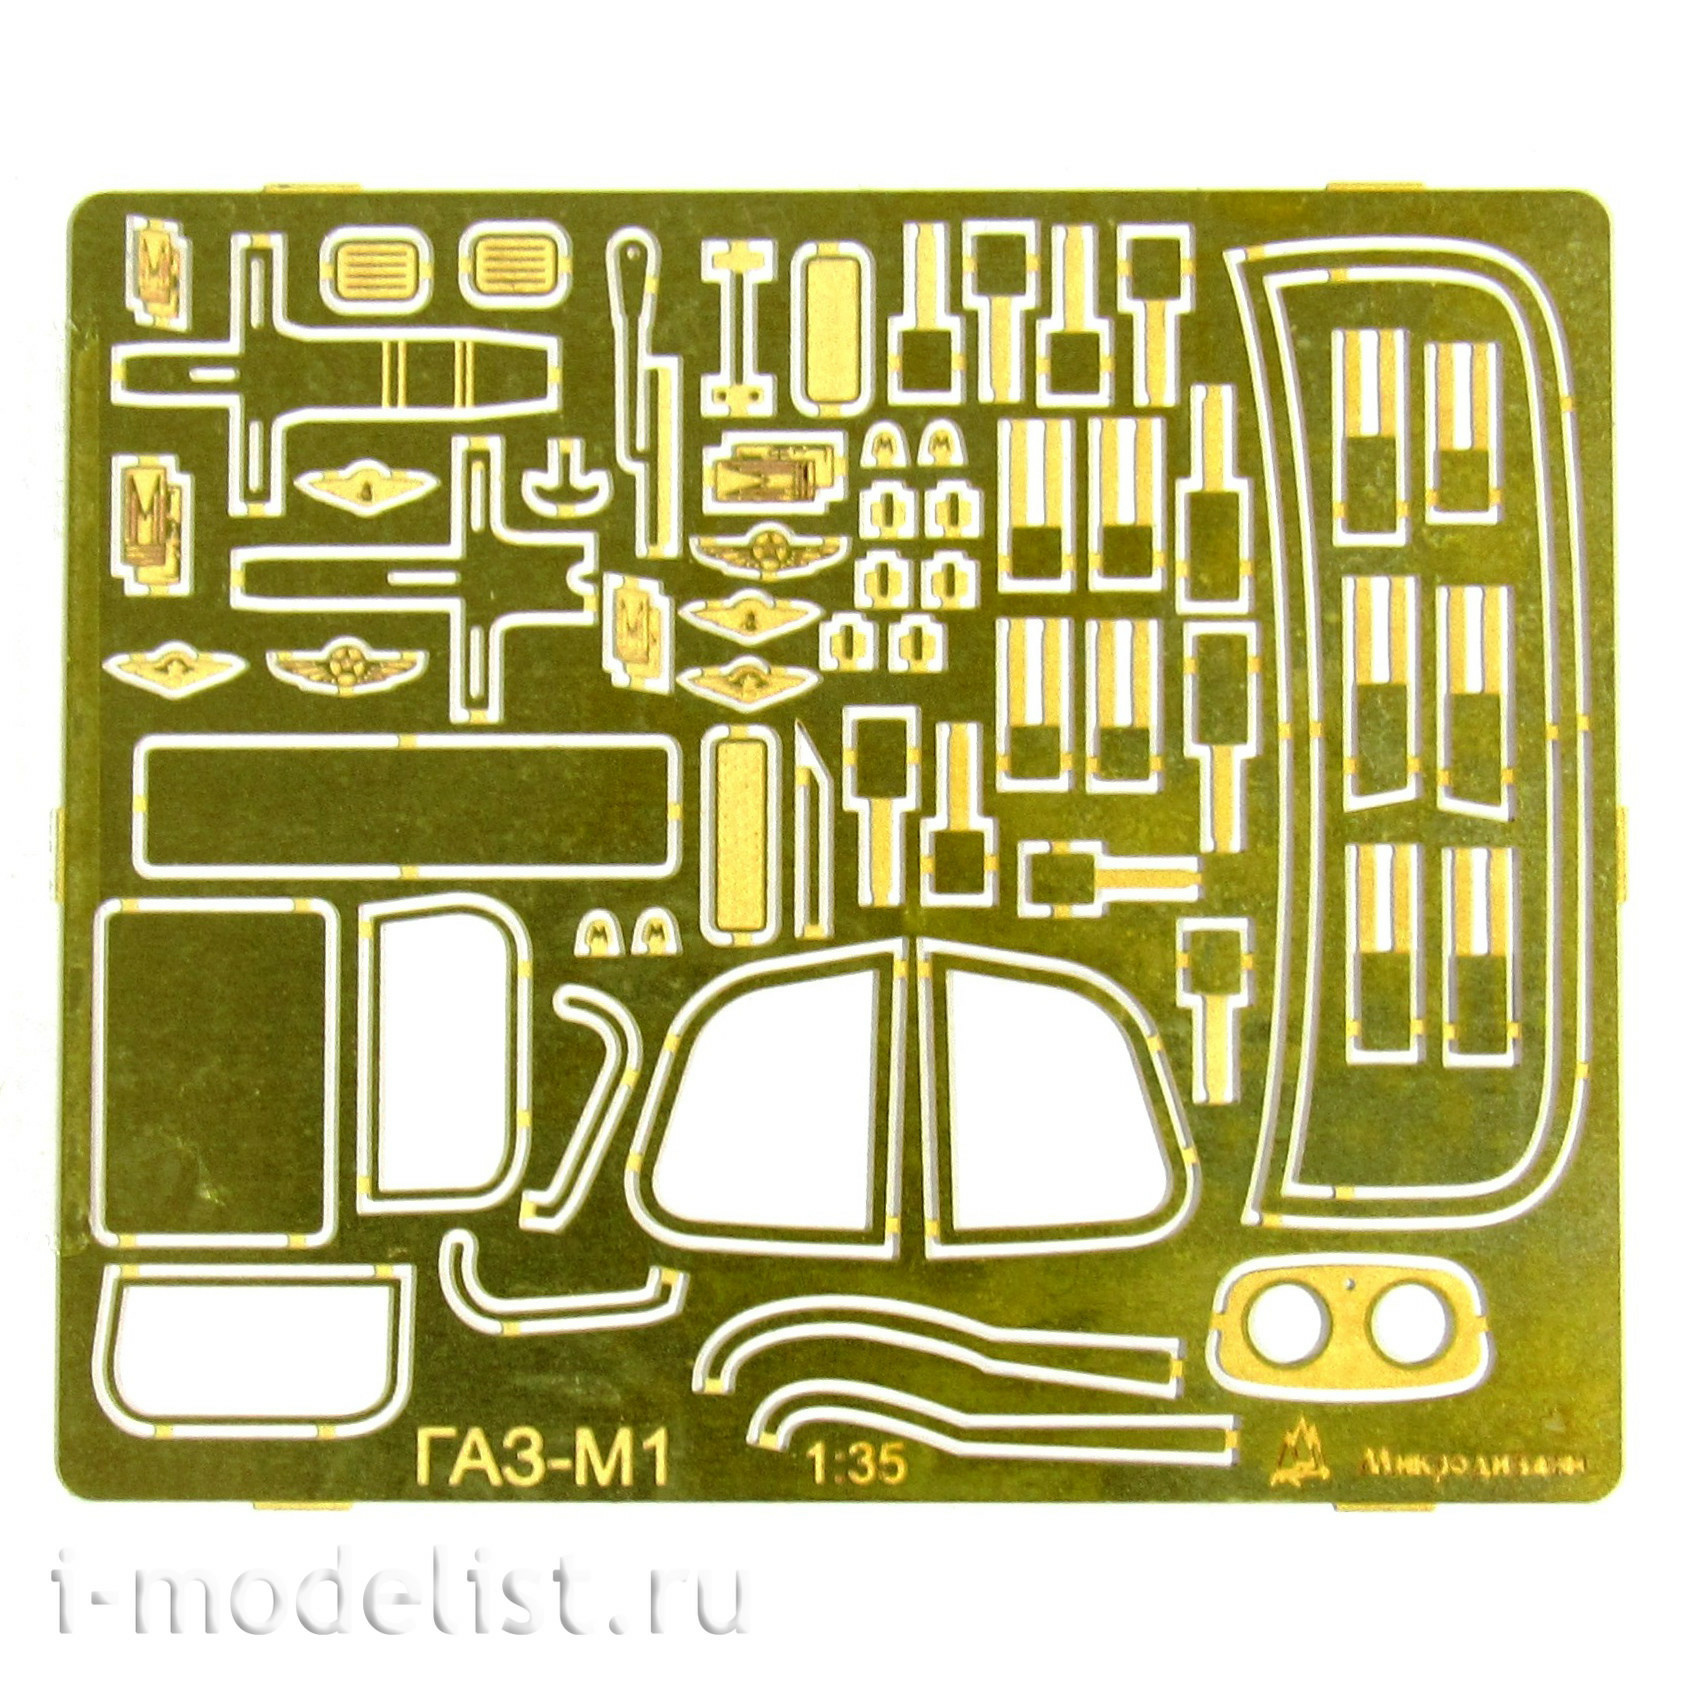 035207 Микродизайн 1/35 Набор деталировки для Автомобиля - М1 (Базовый набор)